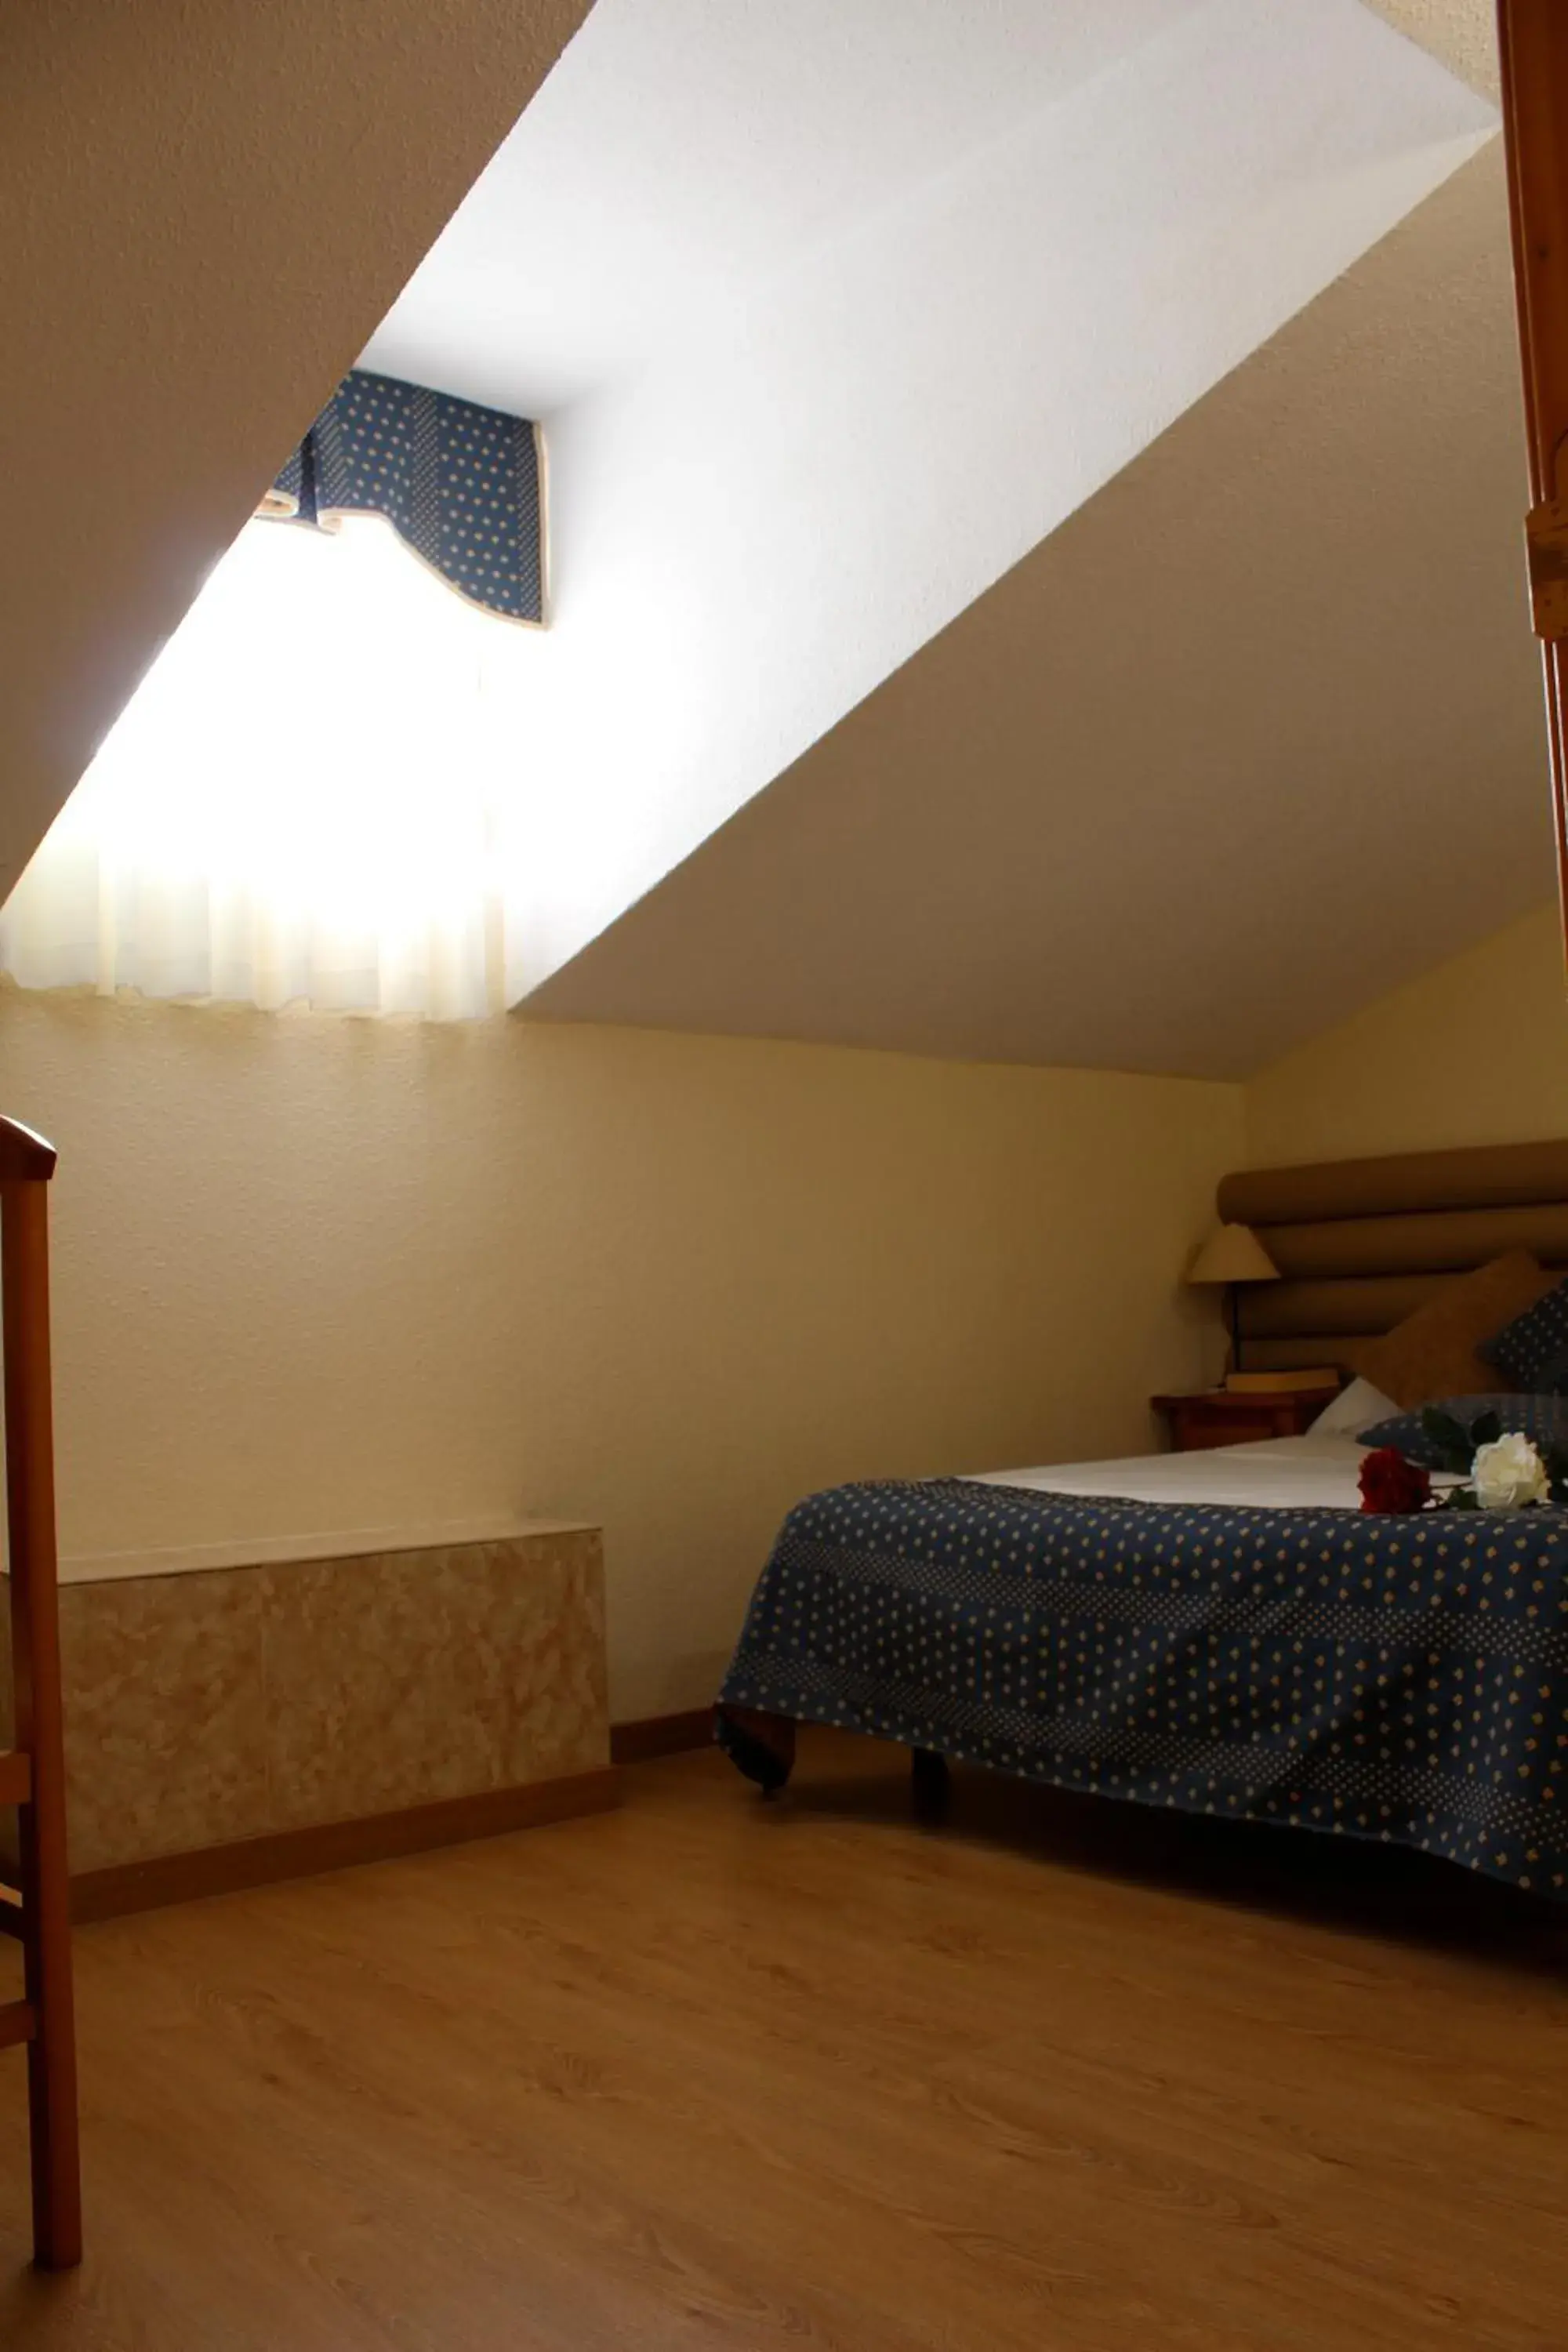 Bedroom, Room Photo in Hotel Cuatro Caños